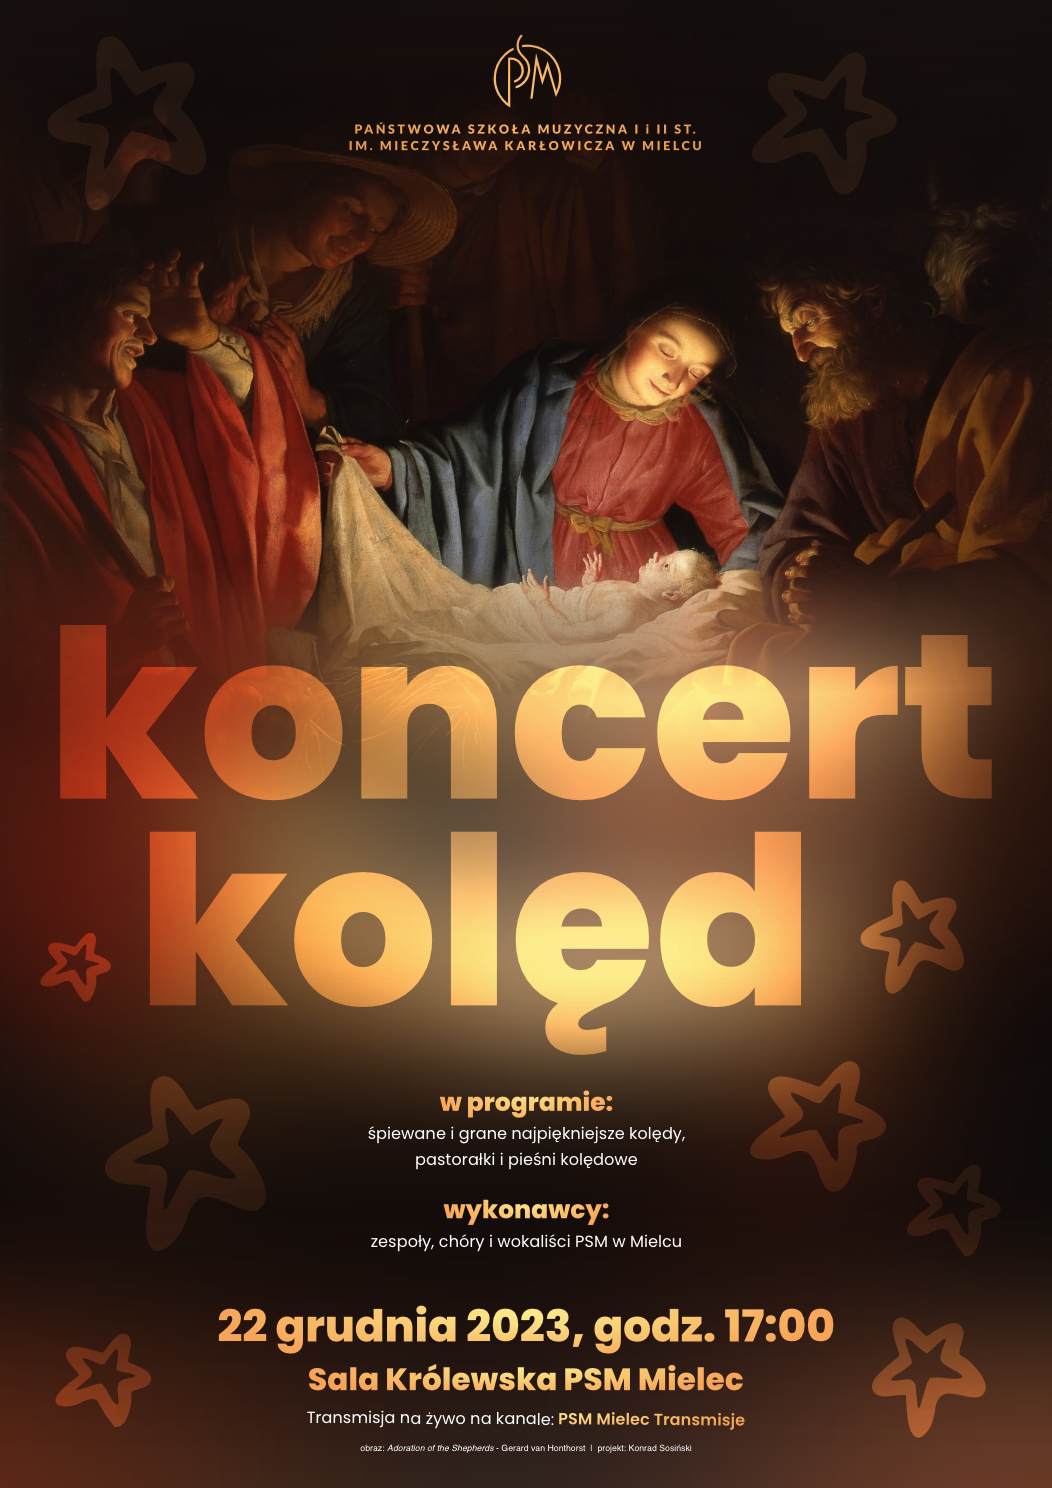 plakat koncertu kolęd 2023, który odbędzie się 22 grudnia, o godzinie 17:00 w sali królewskiej PSM w Mielcu